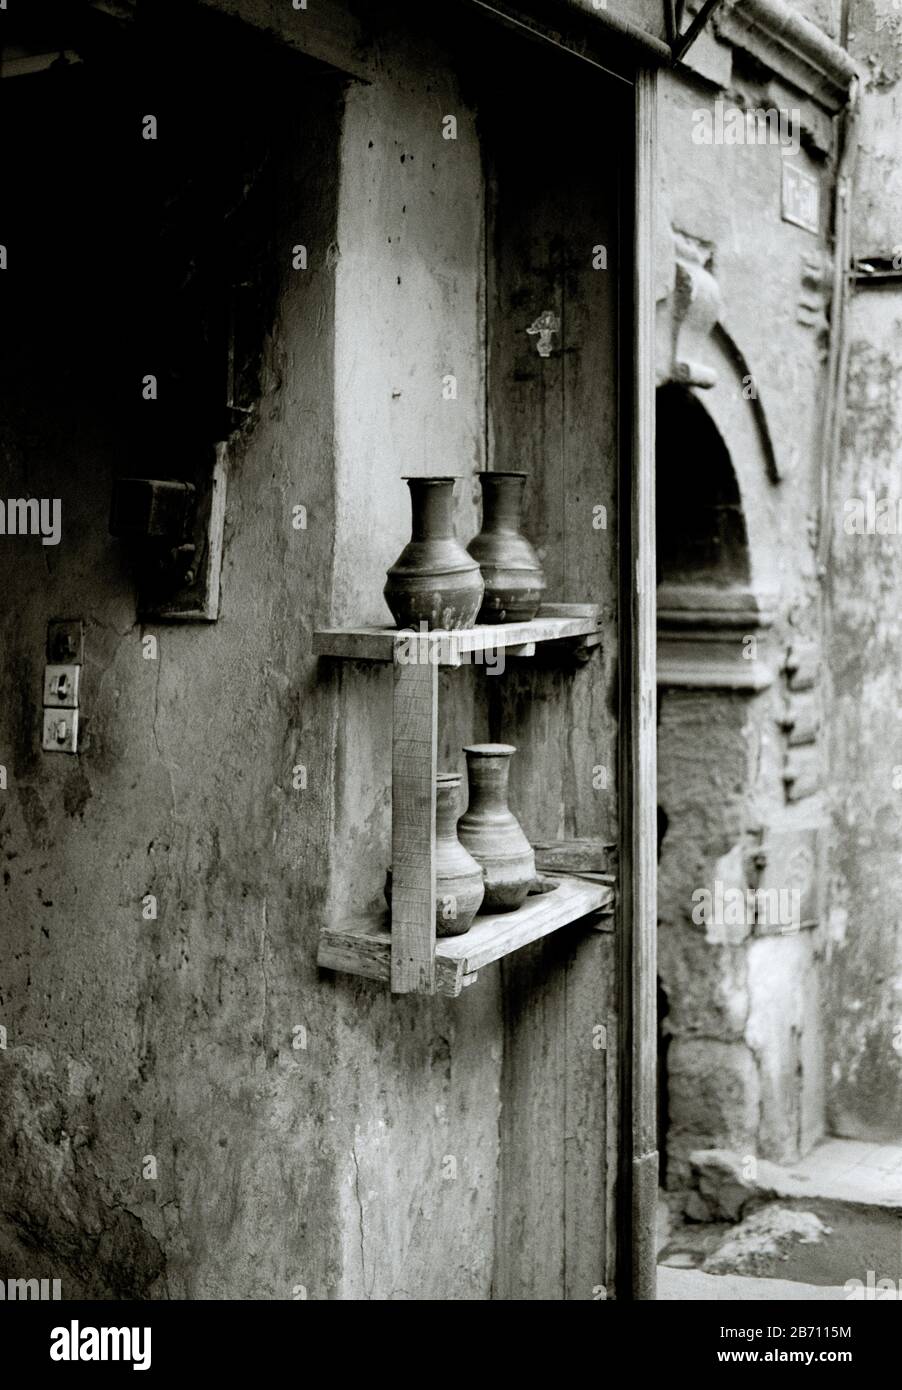 Schwarz-Weiß-Reisefotografie - Straßenszene im islamischen Old Cairo Bezirk der Stadt Kairo in Ägypten in Nordafrika, dem Nahen Osten Stockfoto